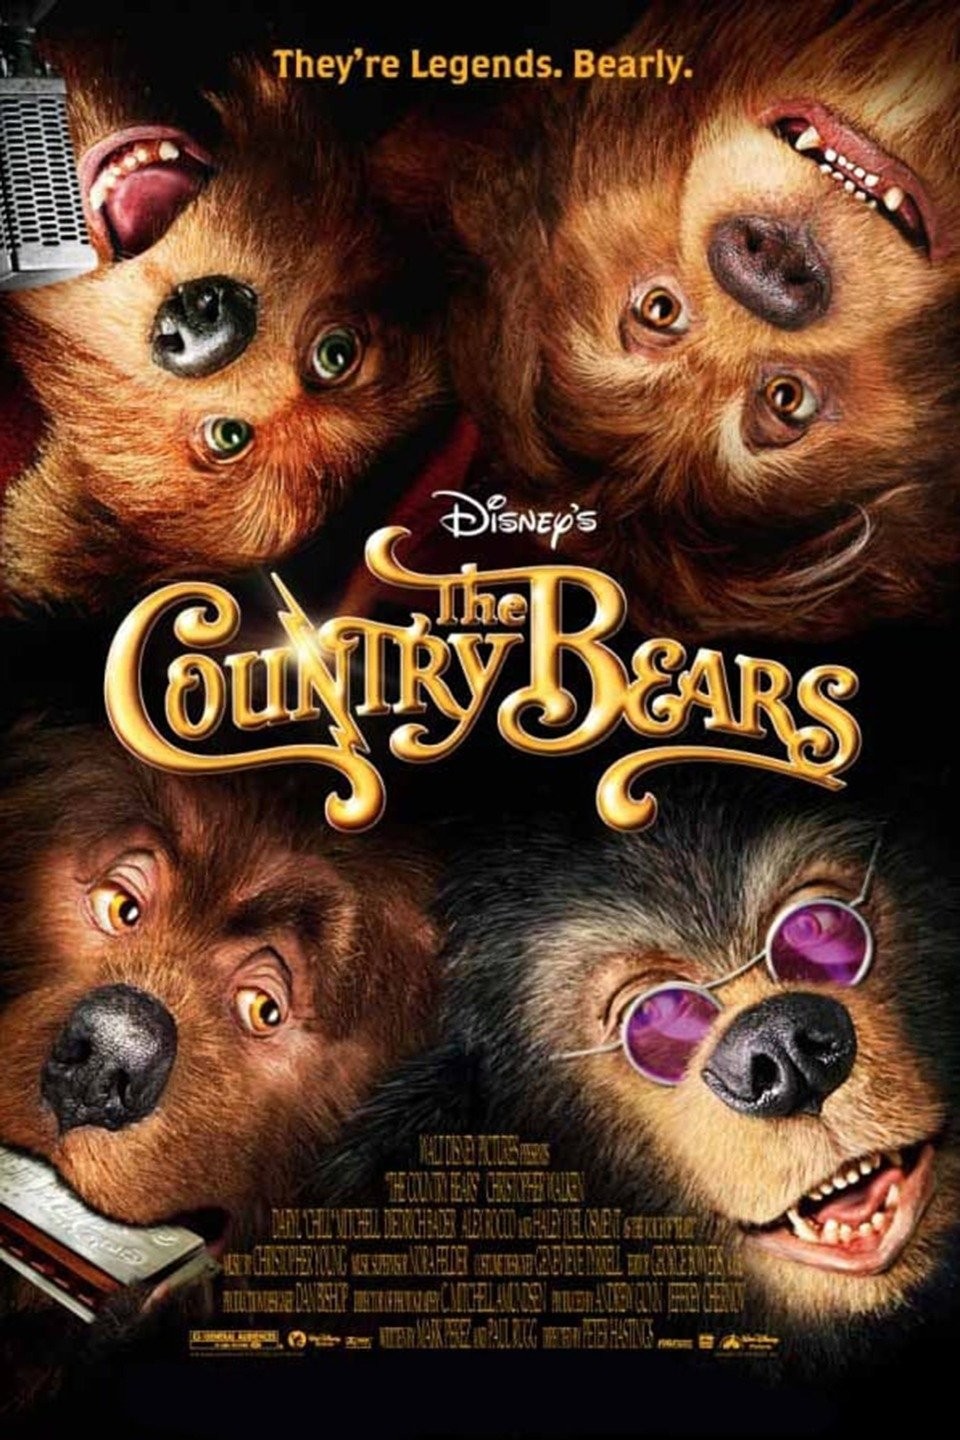 Teddy Bear (TV Movie 2022) - IMDb